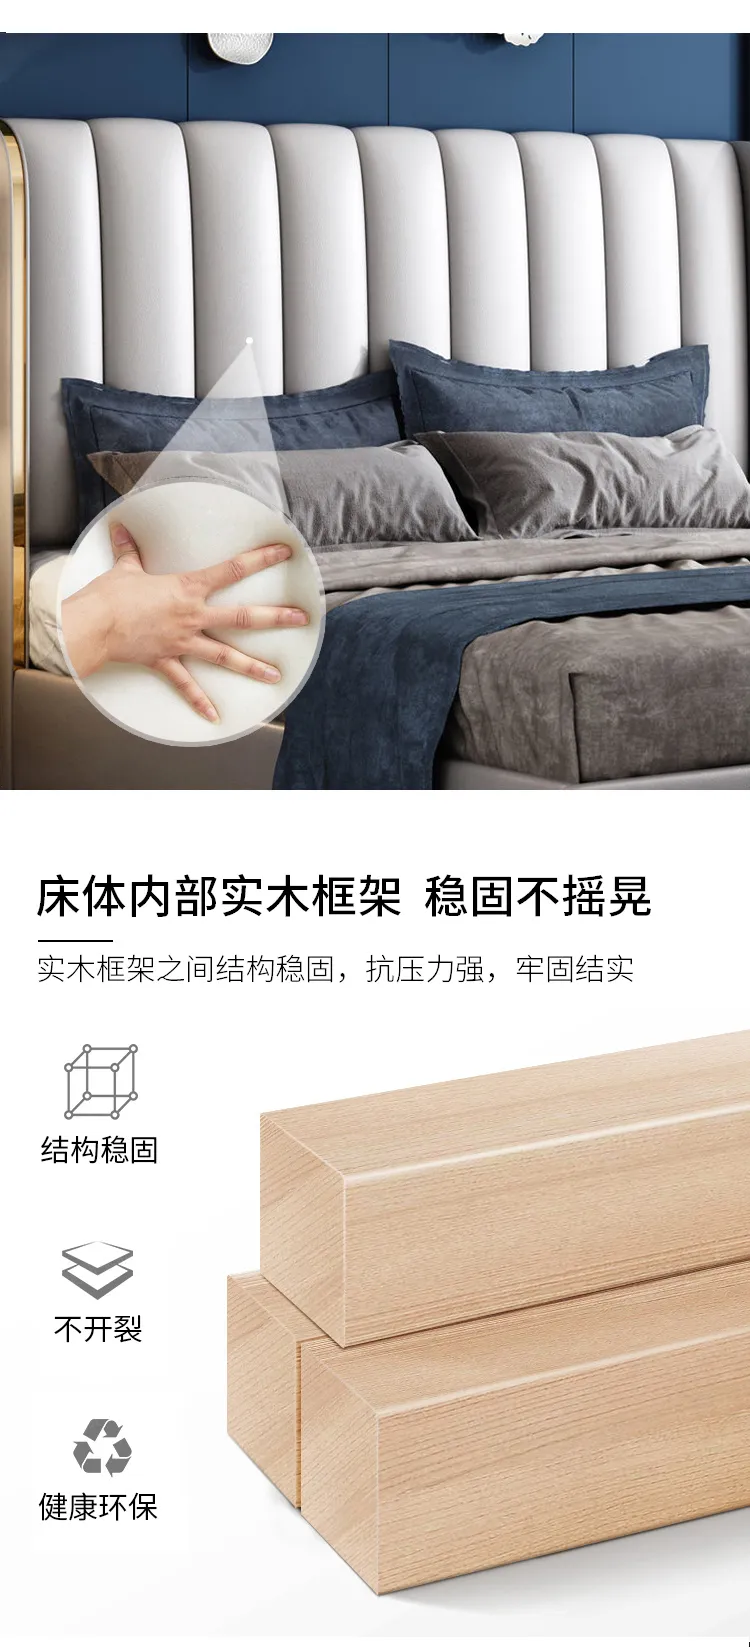 华松居 意式极简轻奢卧室双人床软包靠背小户型皮床家具 8832#-22(图4)